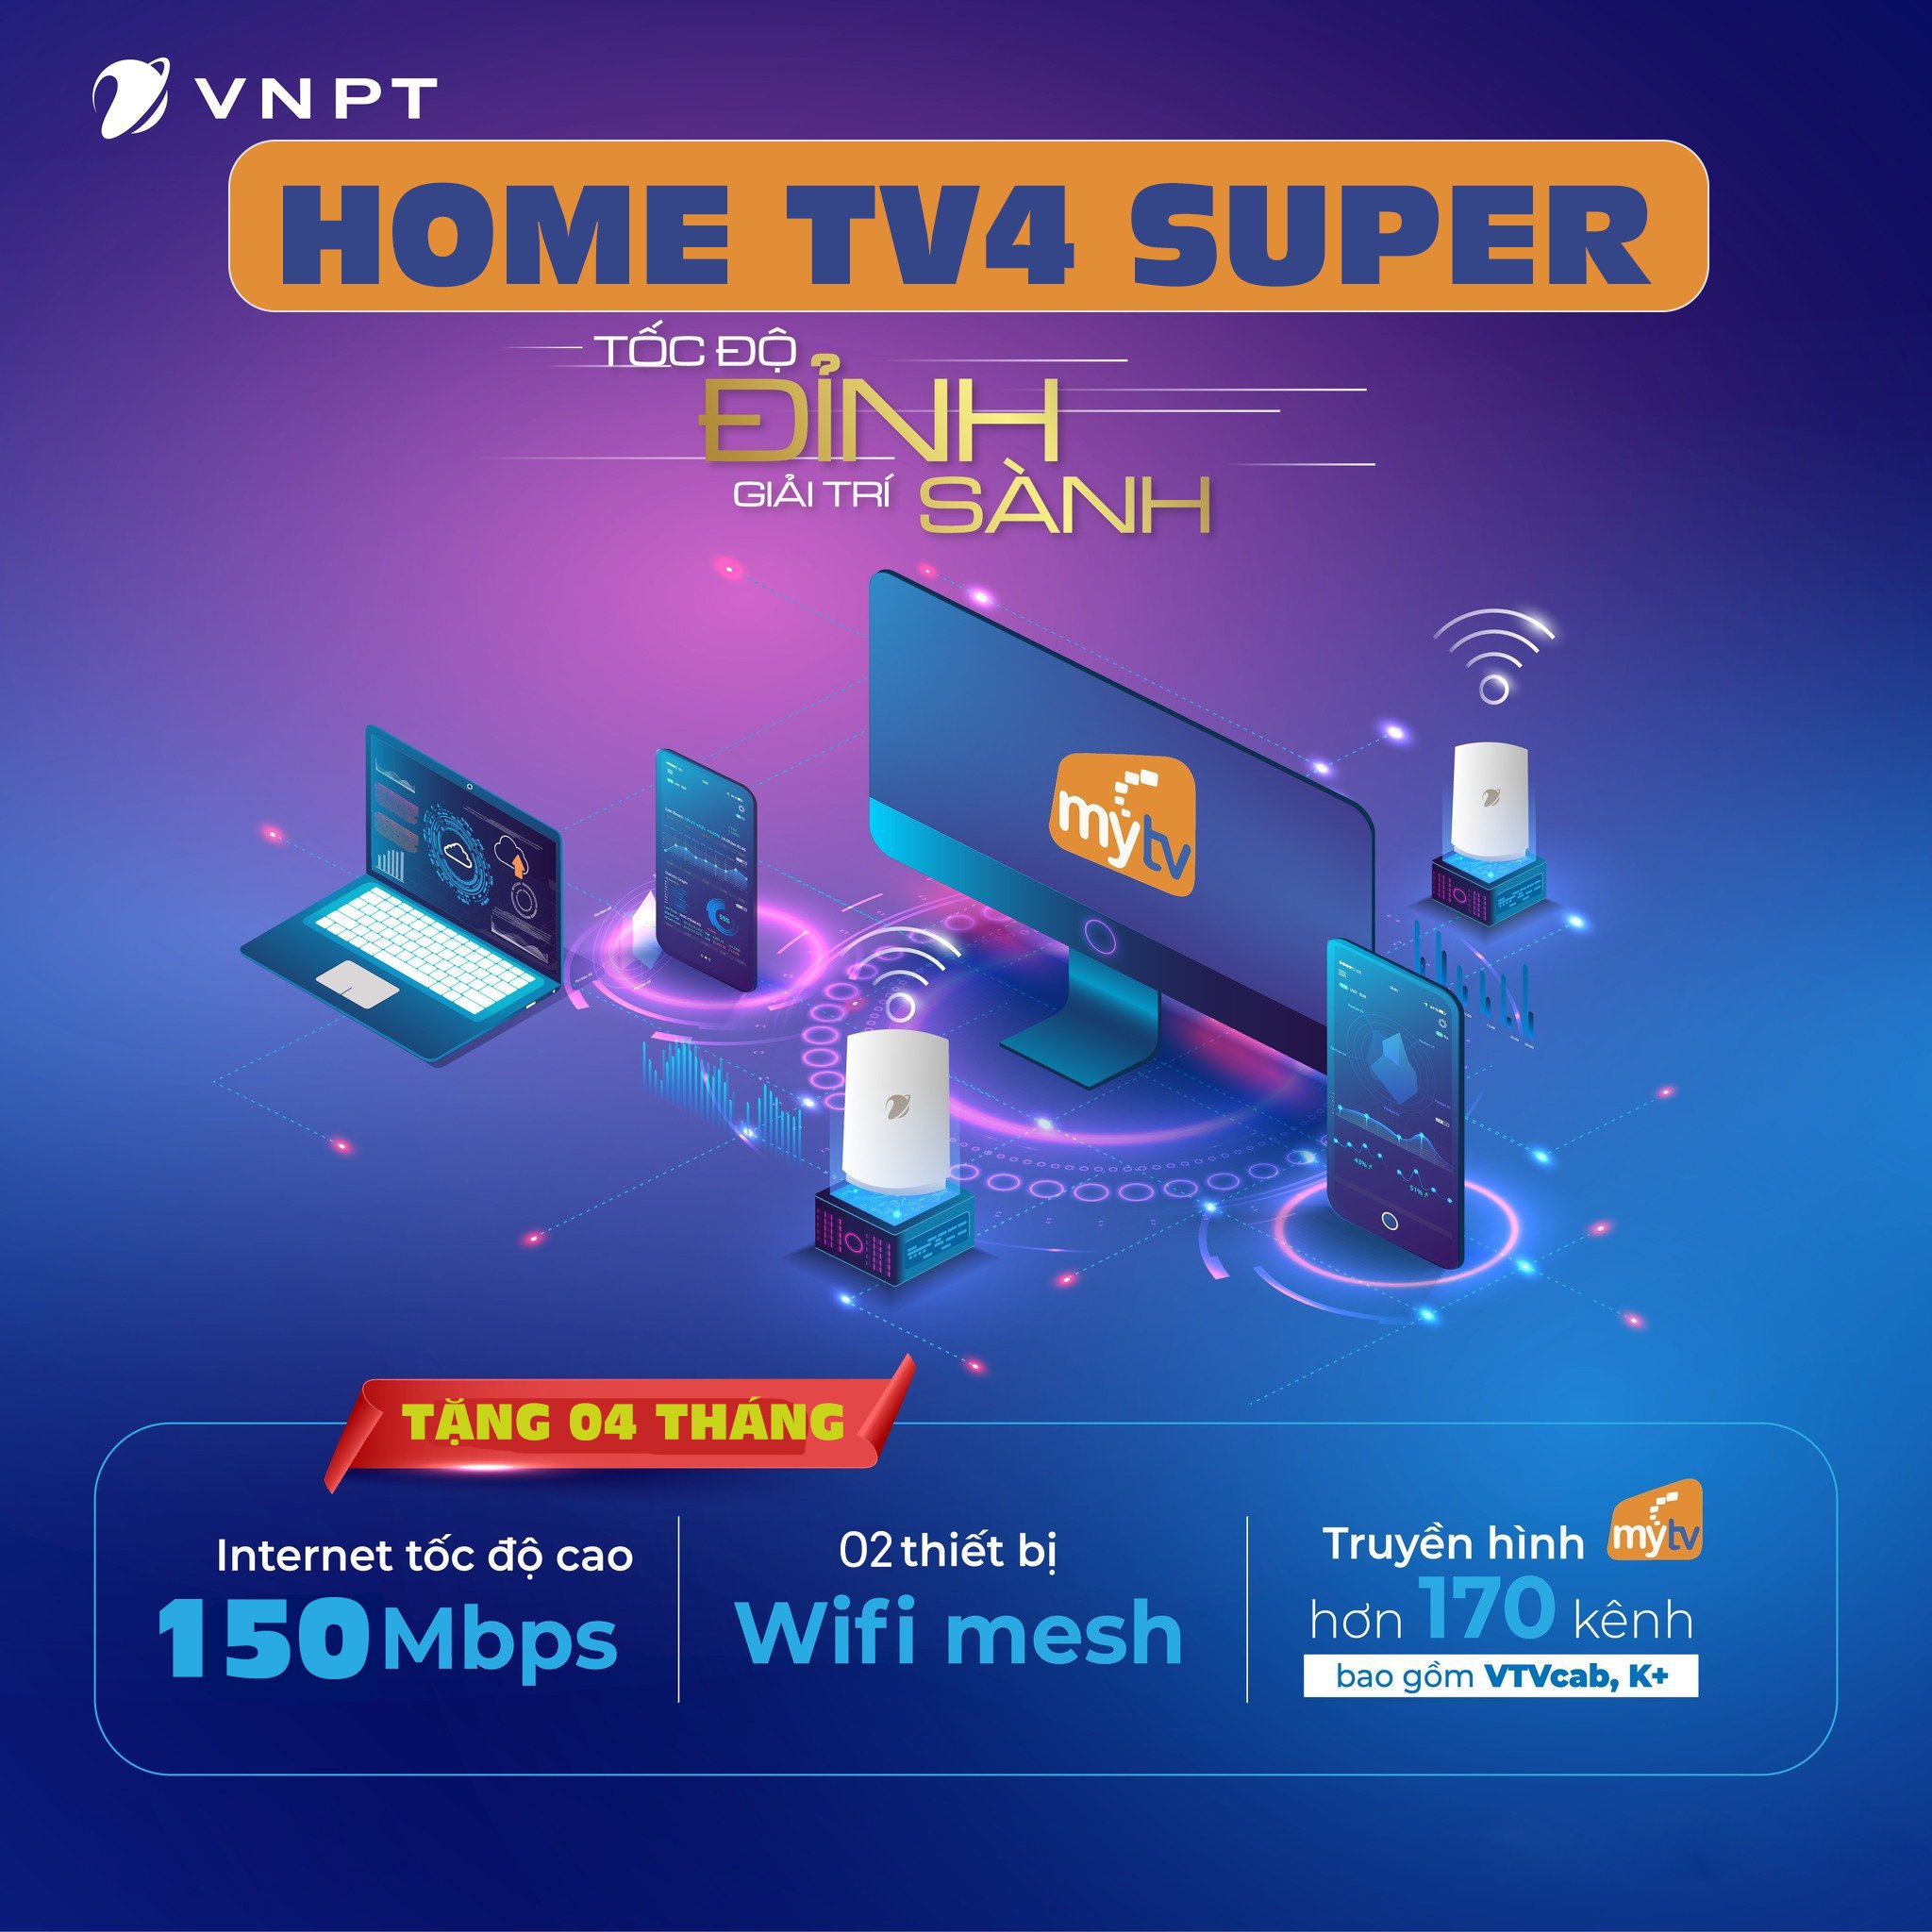 Gói Home Tv4 Super Vnpt, gói home tv4 super, gói home tv 4 super, gói cước home tv4 super vnpt